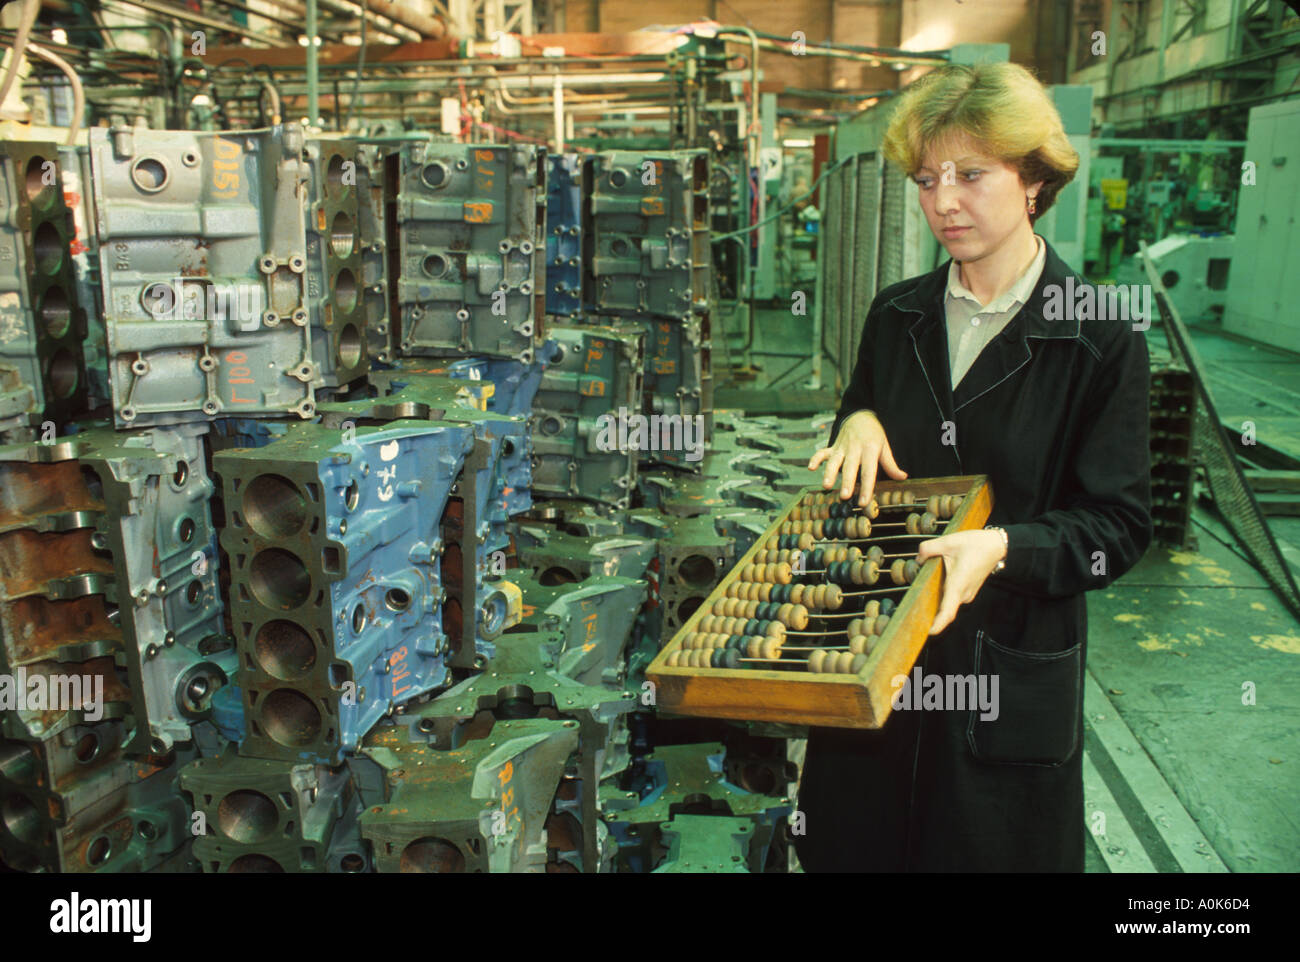 Moskau Russland, Osteuropa Europa, Russische Föderation, privatisierter Maschinenbauer mit Abacus, Rus033 Stockfoto